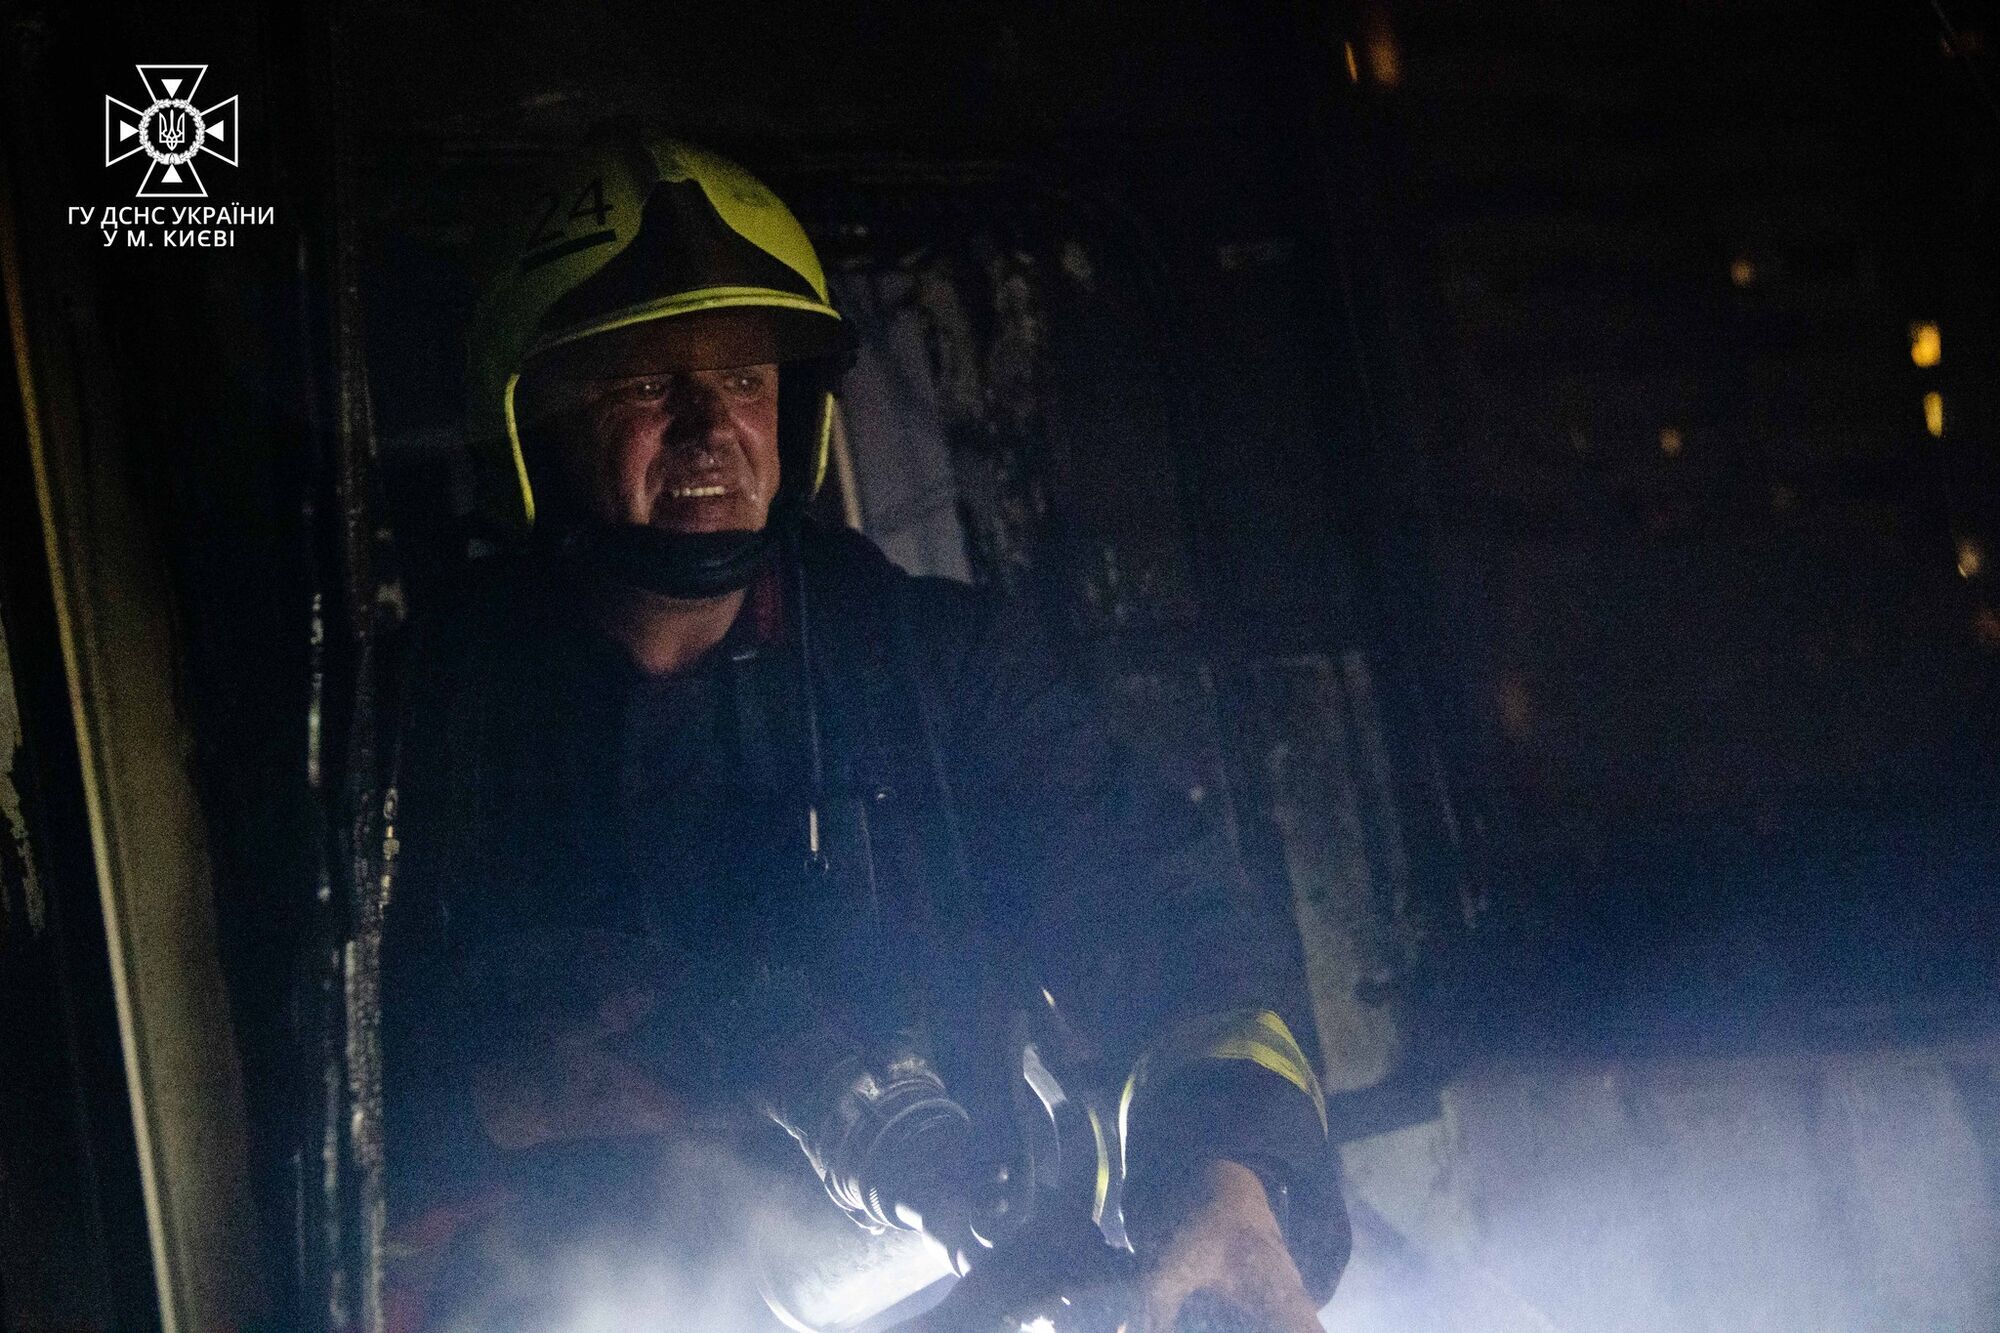 У Києві сталась пожежа в 16-поверховому будинку: рятувальники проводили евакуацію мешканців. Фото і подробиці